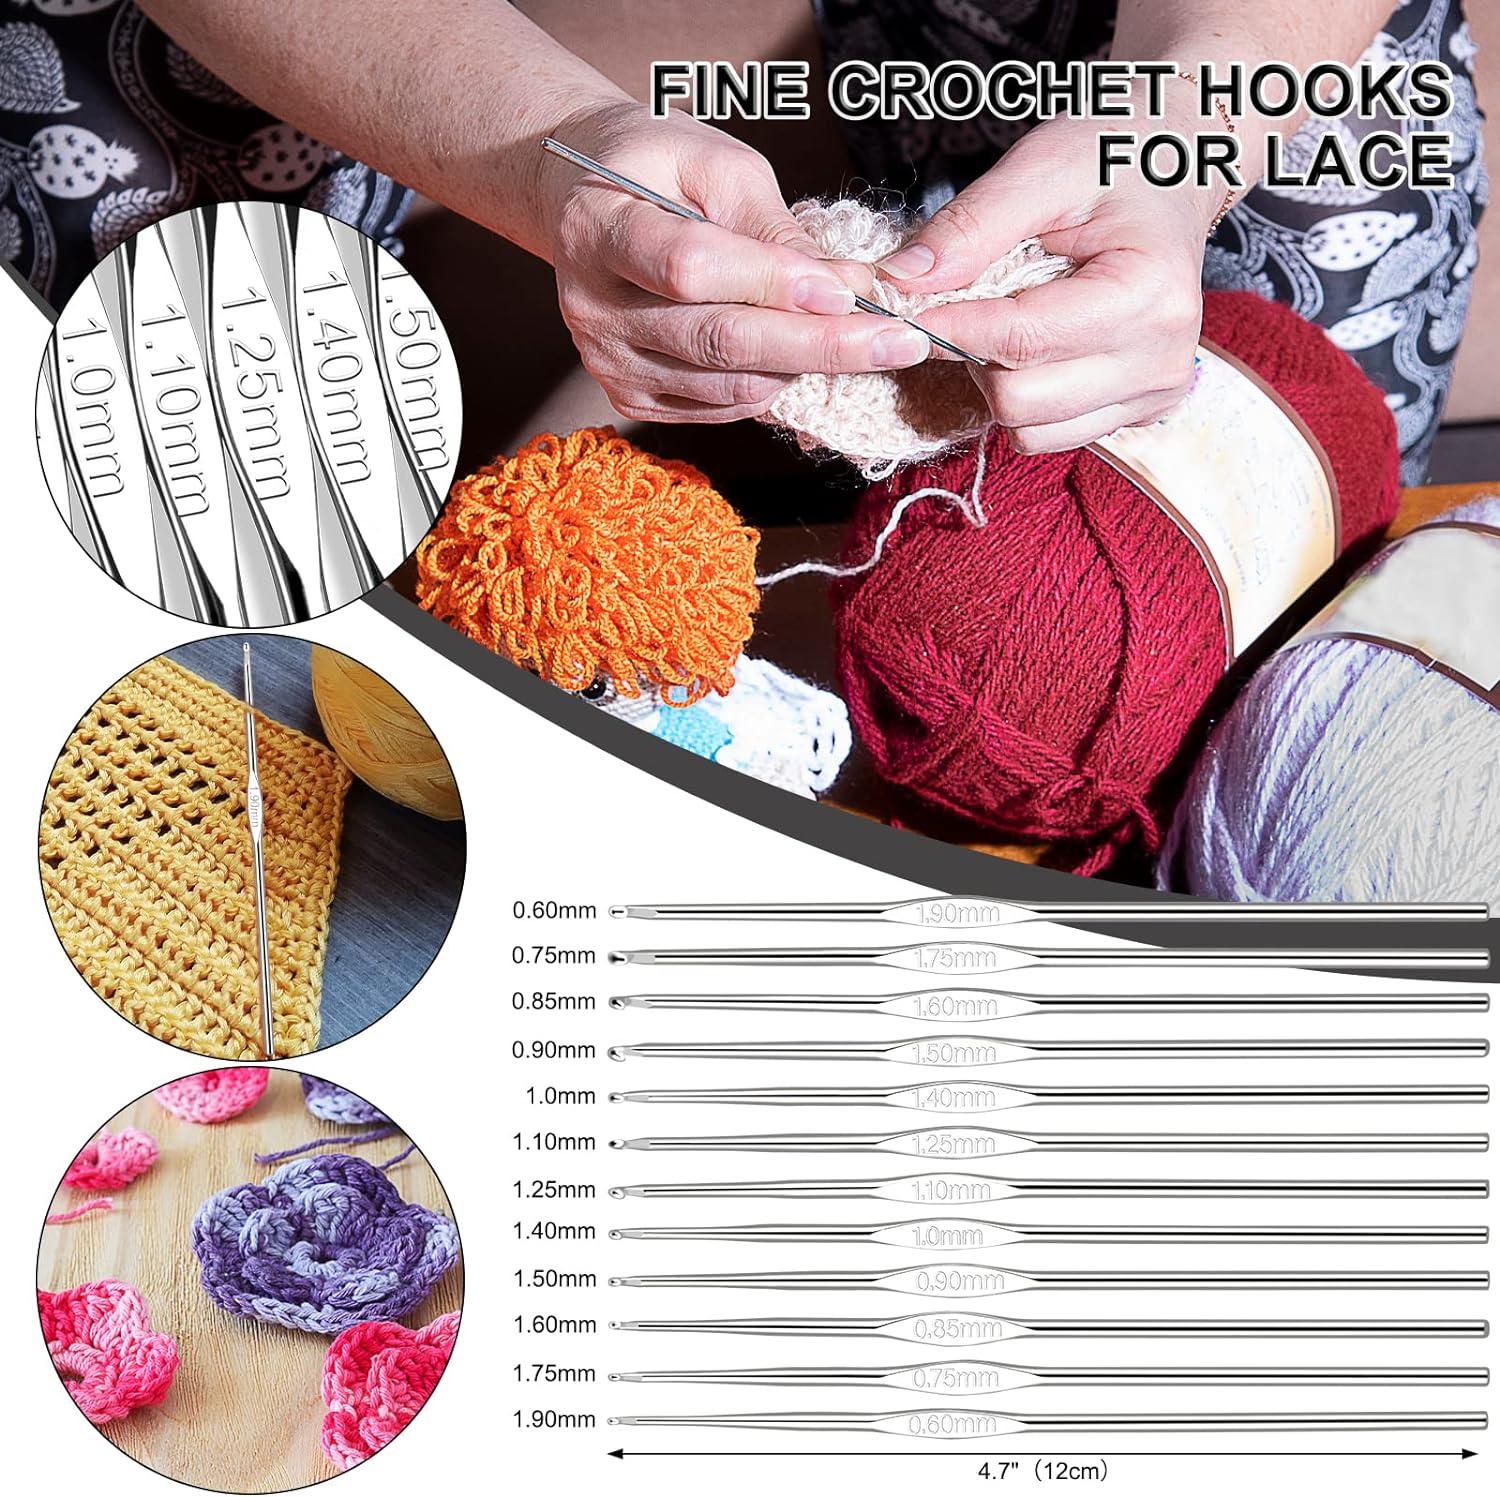 Aeelike Crochet Kit for Beginners Adults, Full Crochet Starter Set with  Yarn, Include 9pcs Ergonomic Crochet Hooks 2.0-6.0 mm, 1